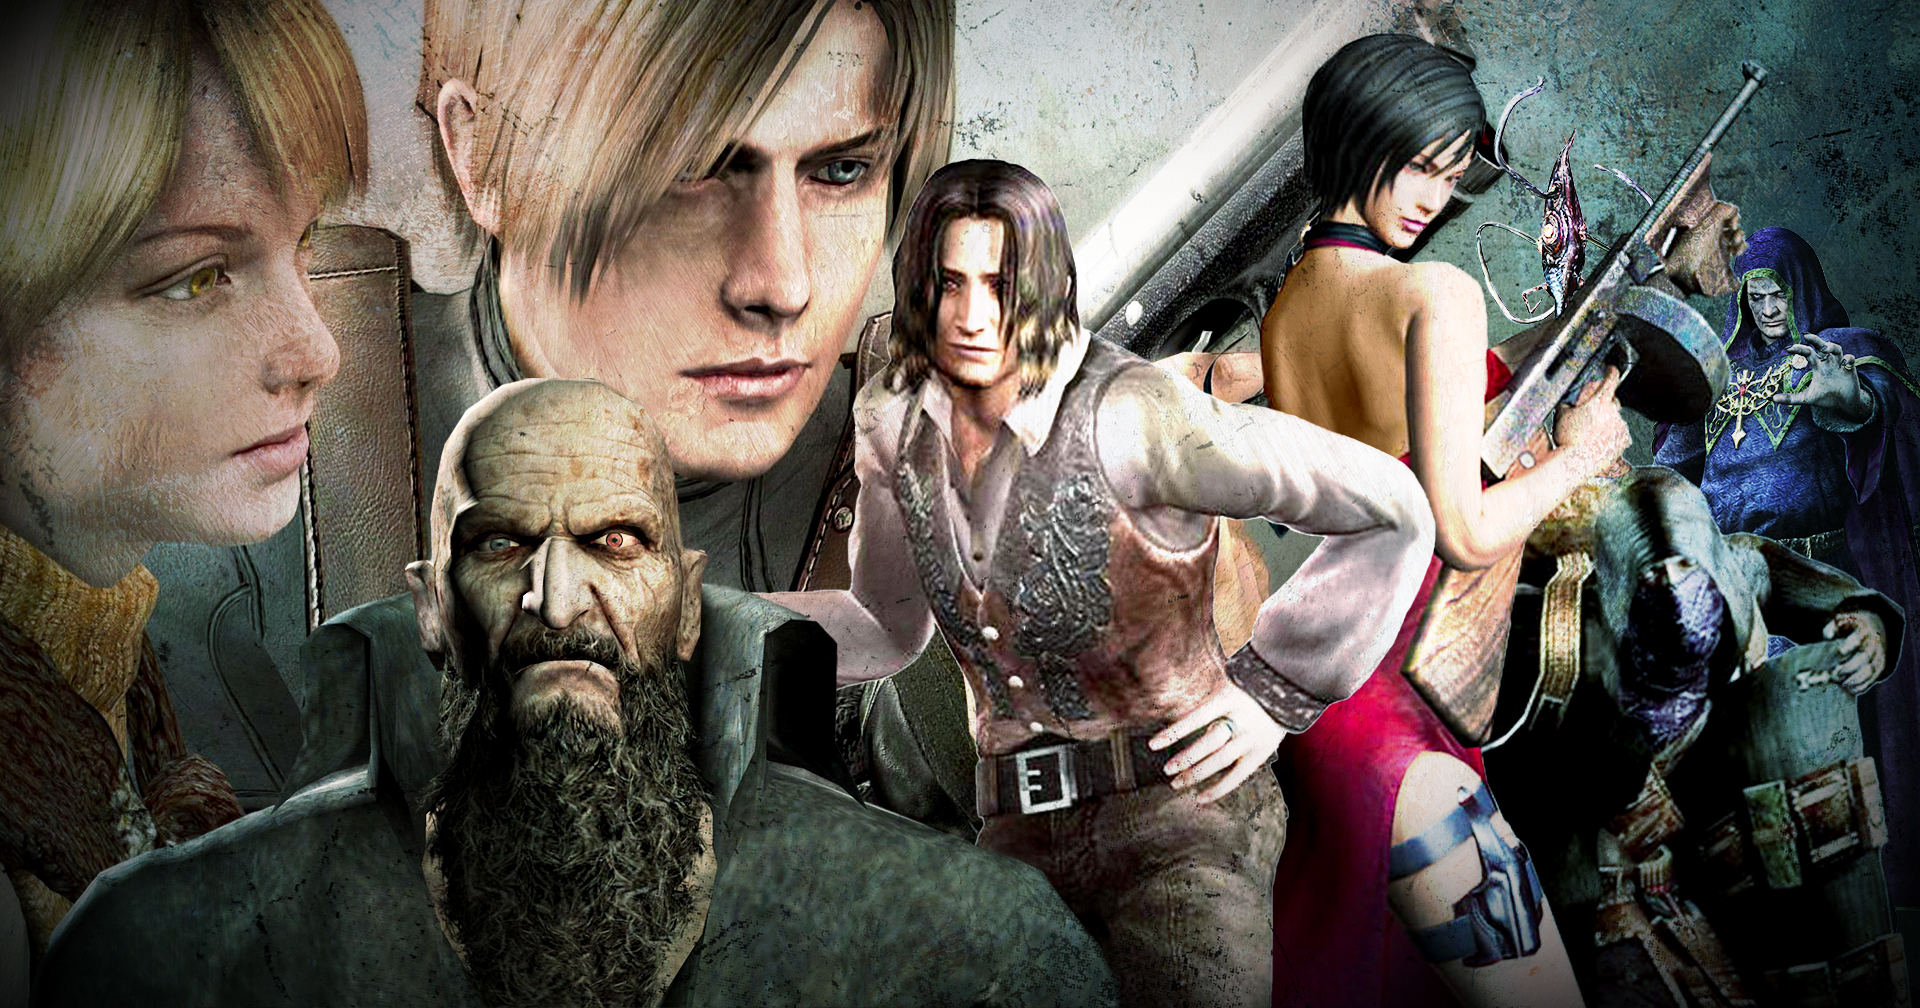 วิเคราะห์ความสำเร็จของ Resident Evil 4 ความกลัวกดดันแต่สนุกที่คนเล่นเกมหลงรัก